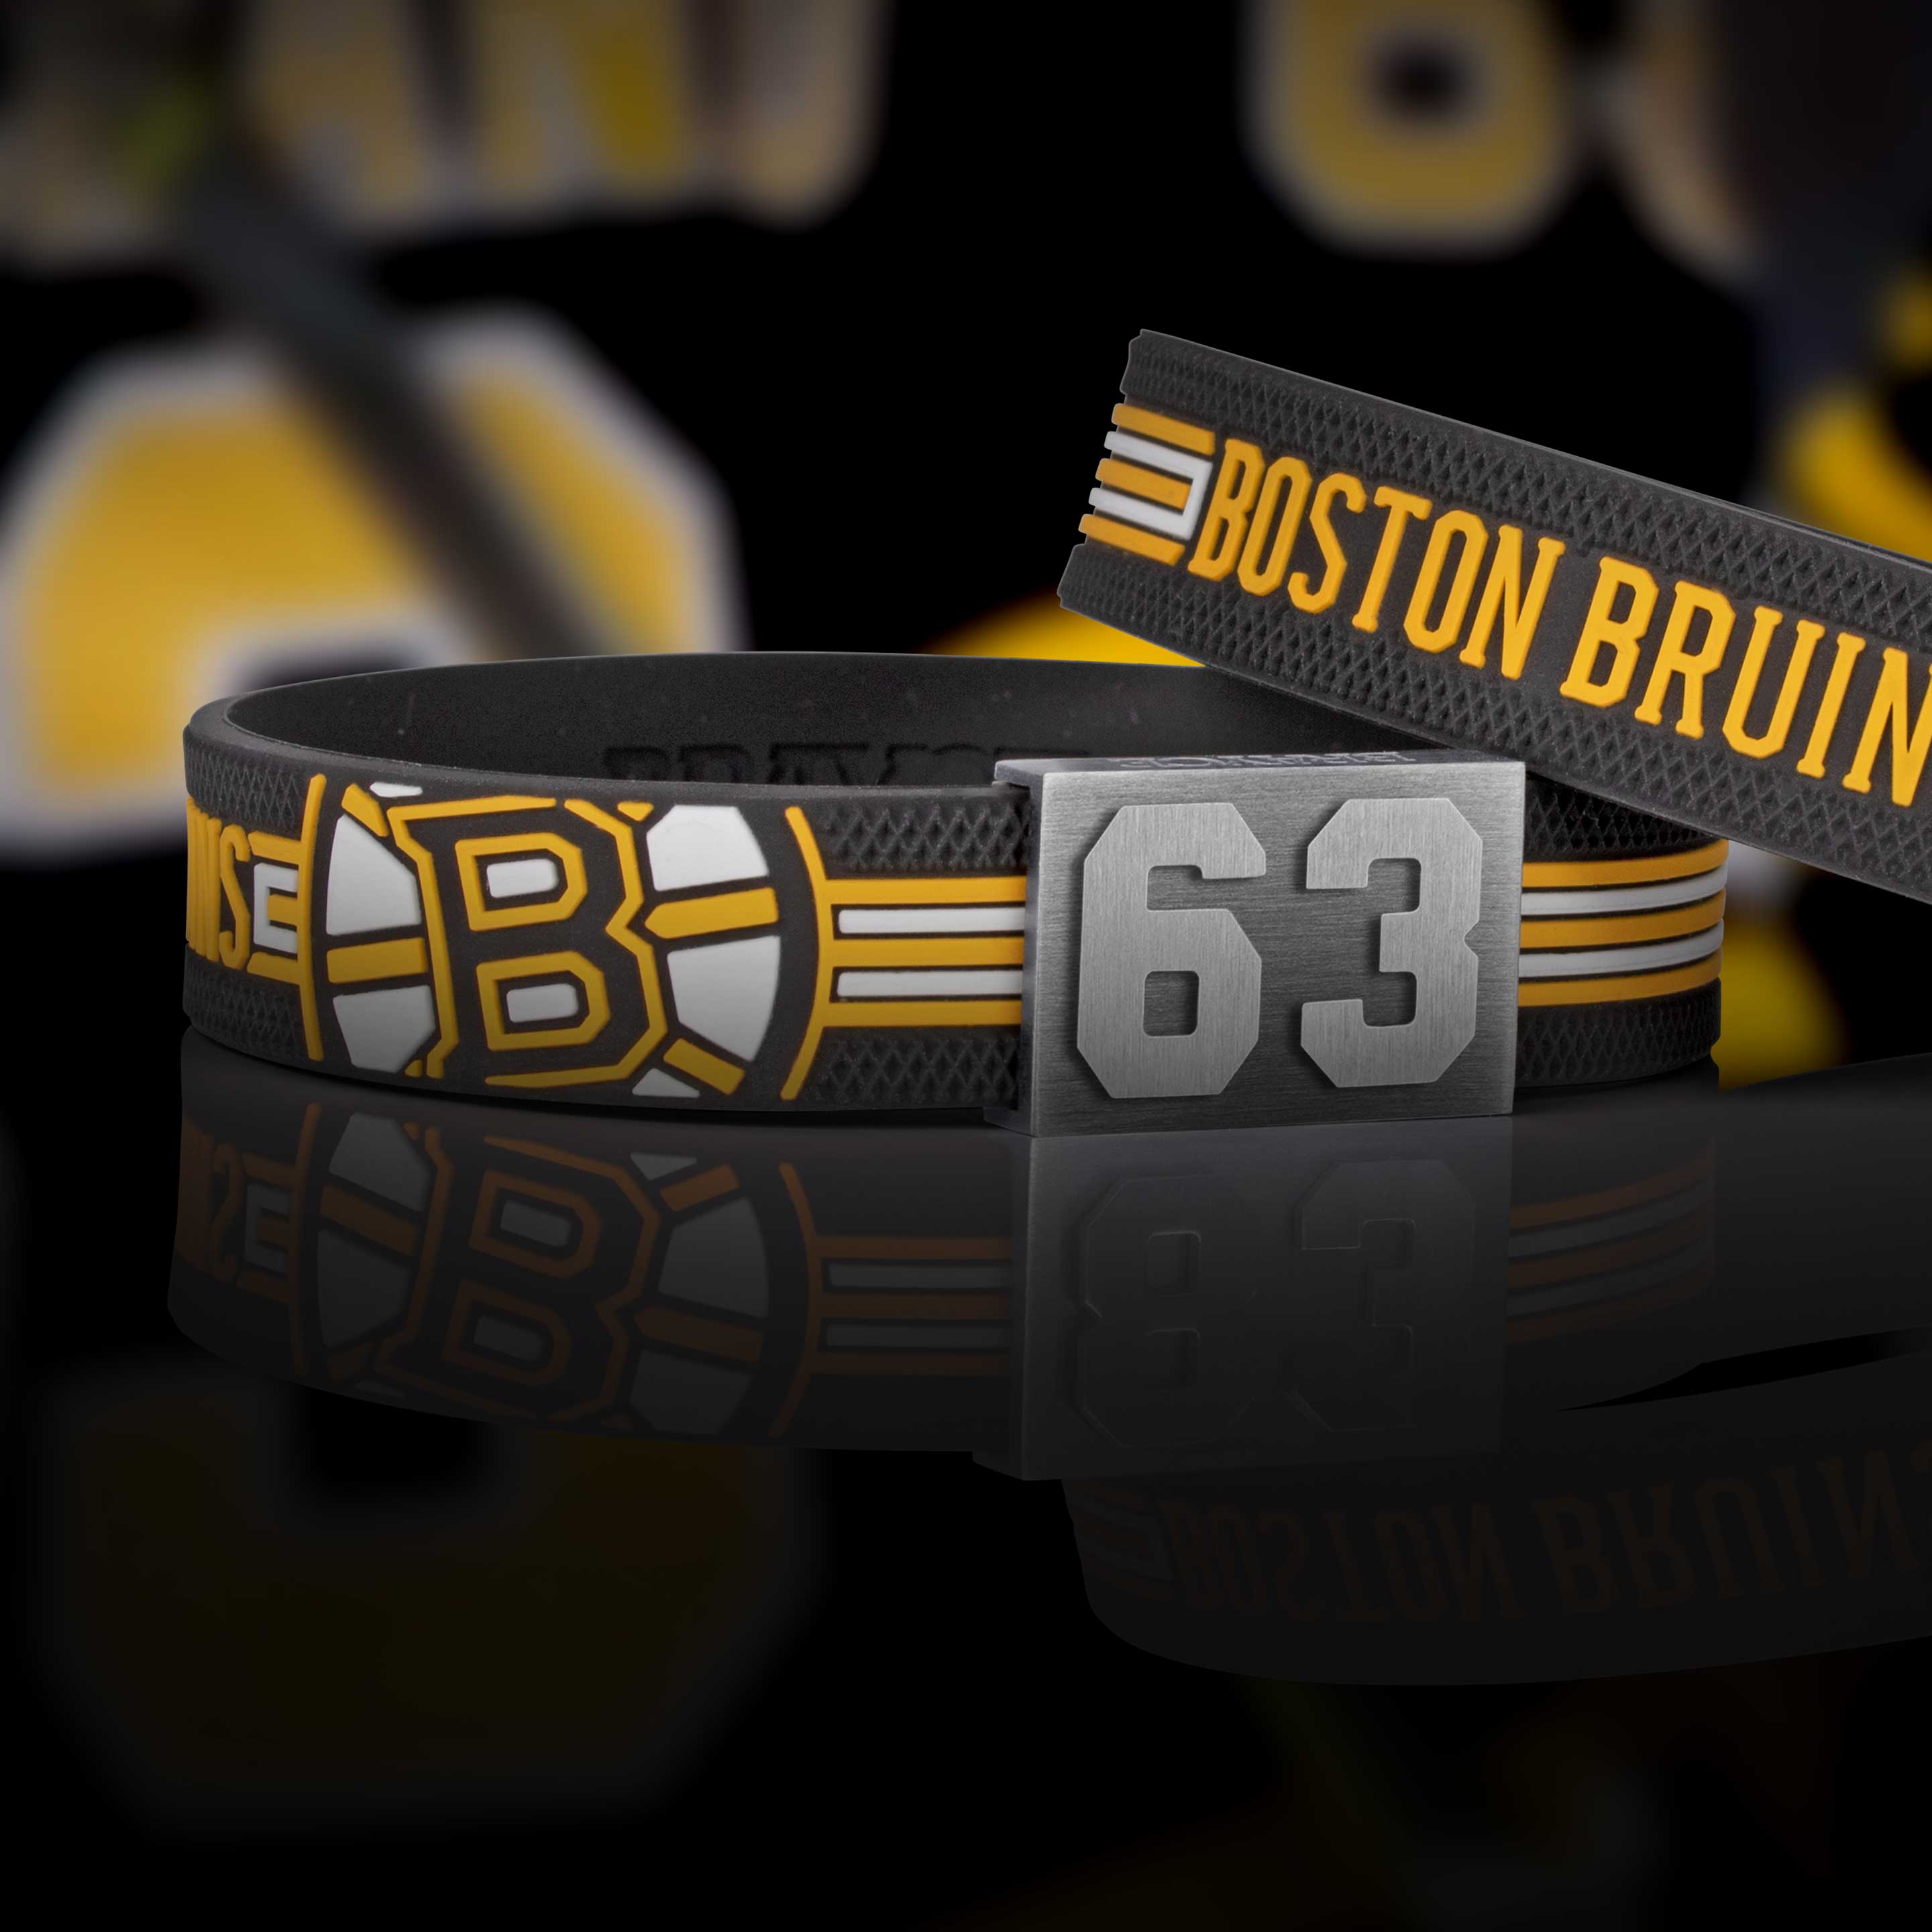 Boston Bruins bracelet atmo shot